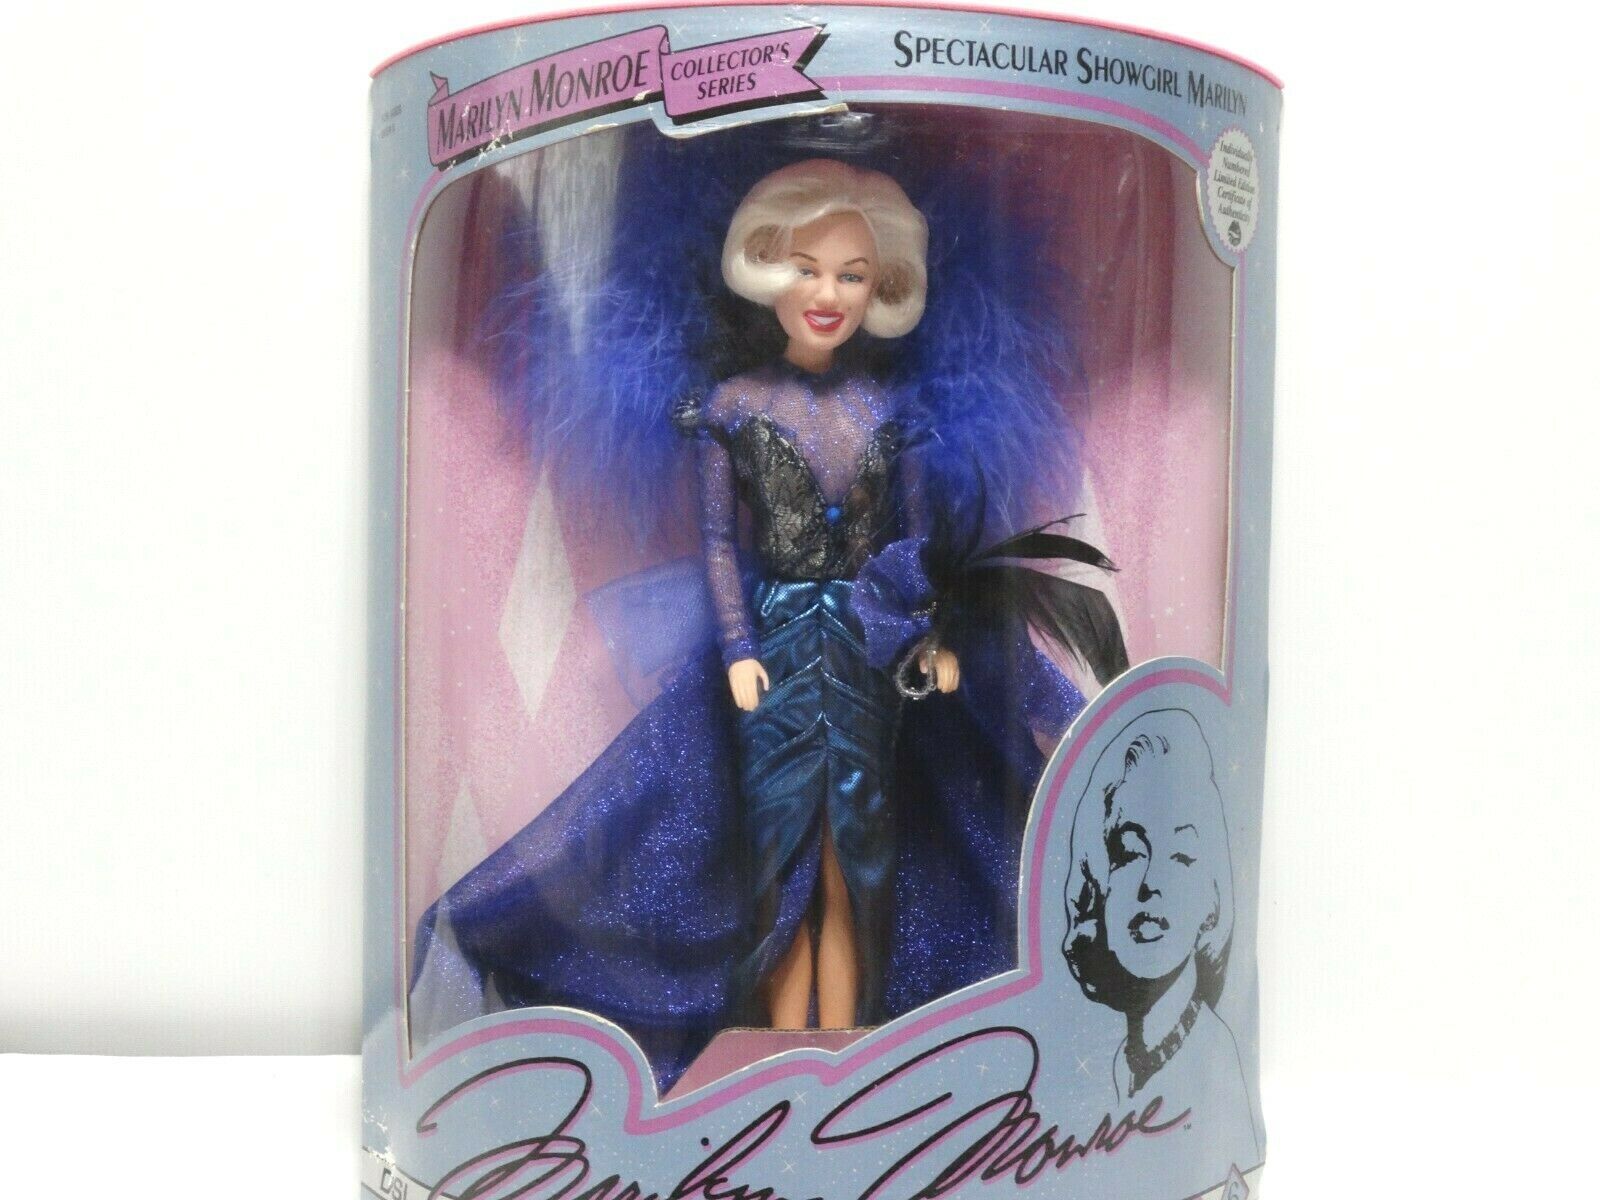 1993 Marilyn Monroe Spectacular Showgirl Doll #07409 W/coa New Nrfb